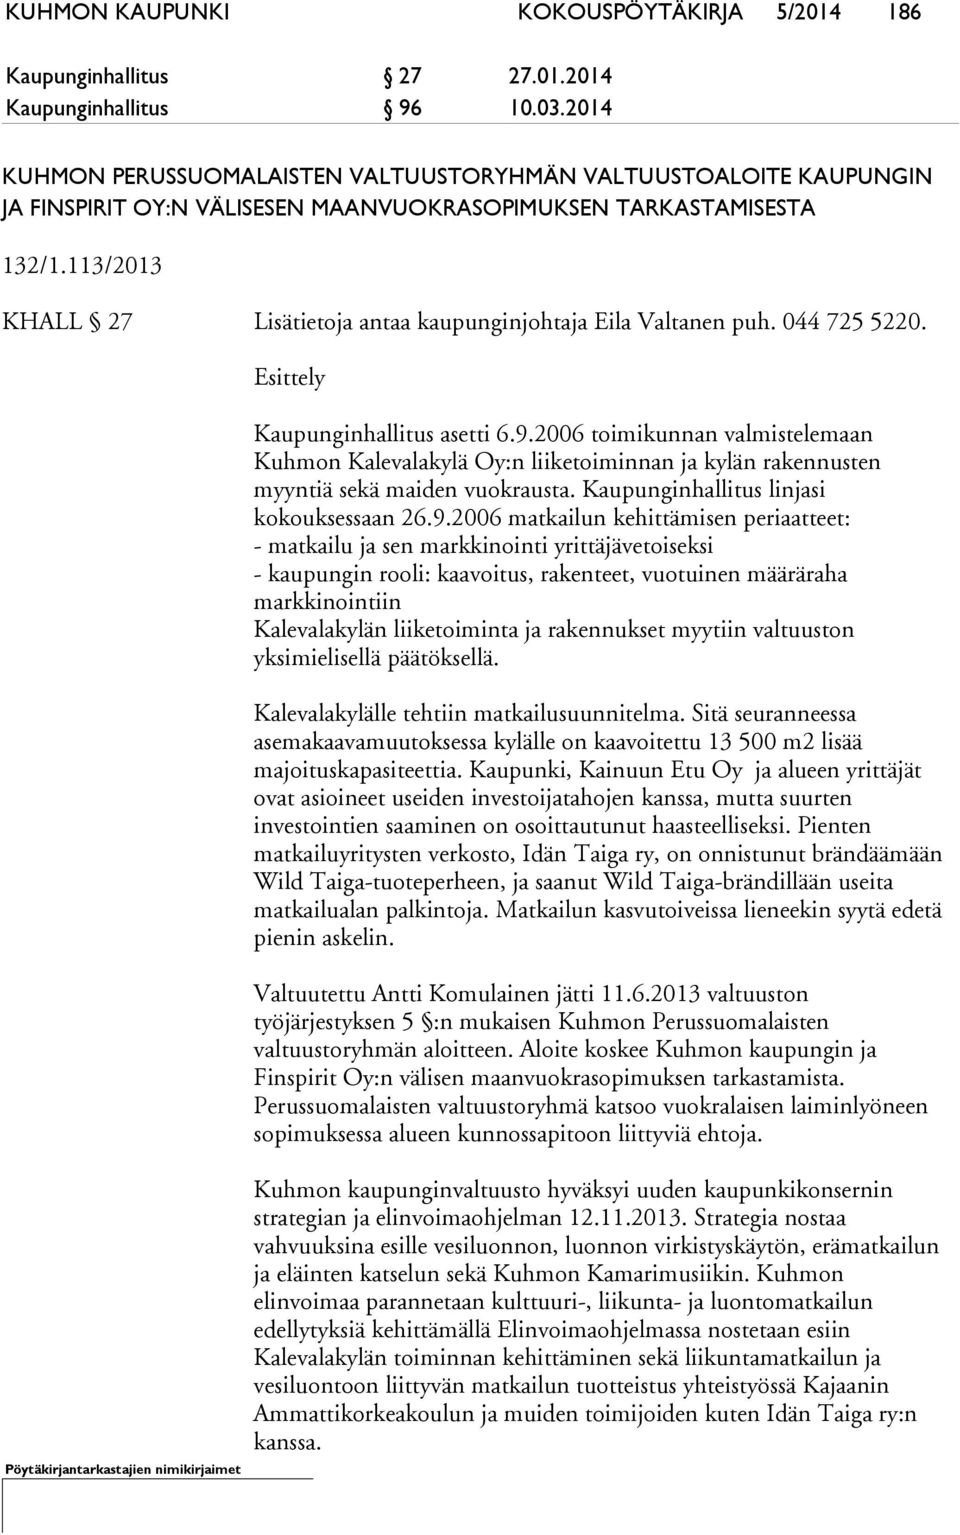 113/2013 KHALL 27 Lisätietoja antaa kaupunginjohtaja Eila Valtanen puh. 044 725 5220. Esittely Kaupunginhallitus asetti 6.9.